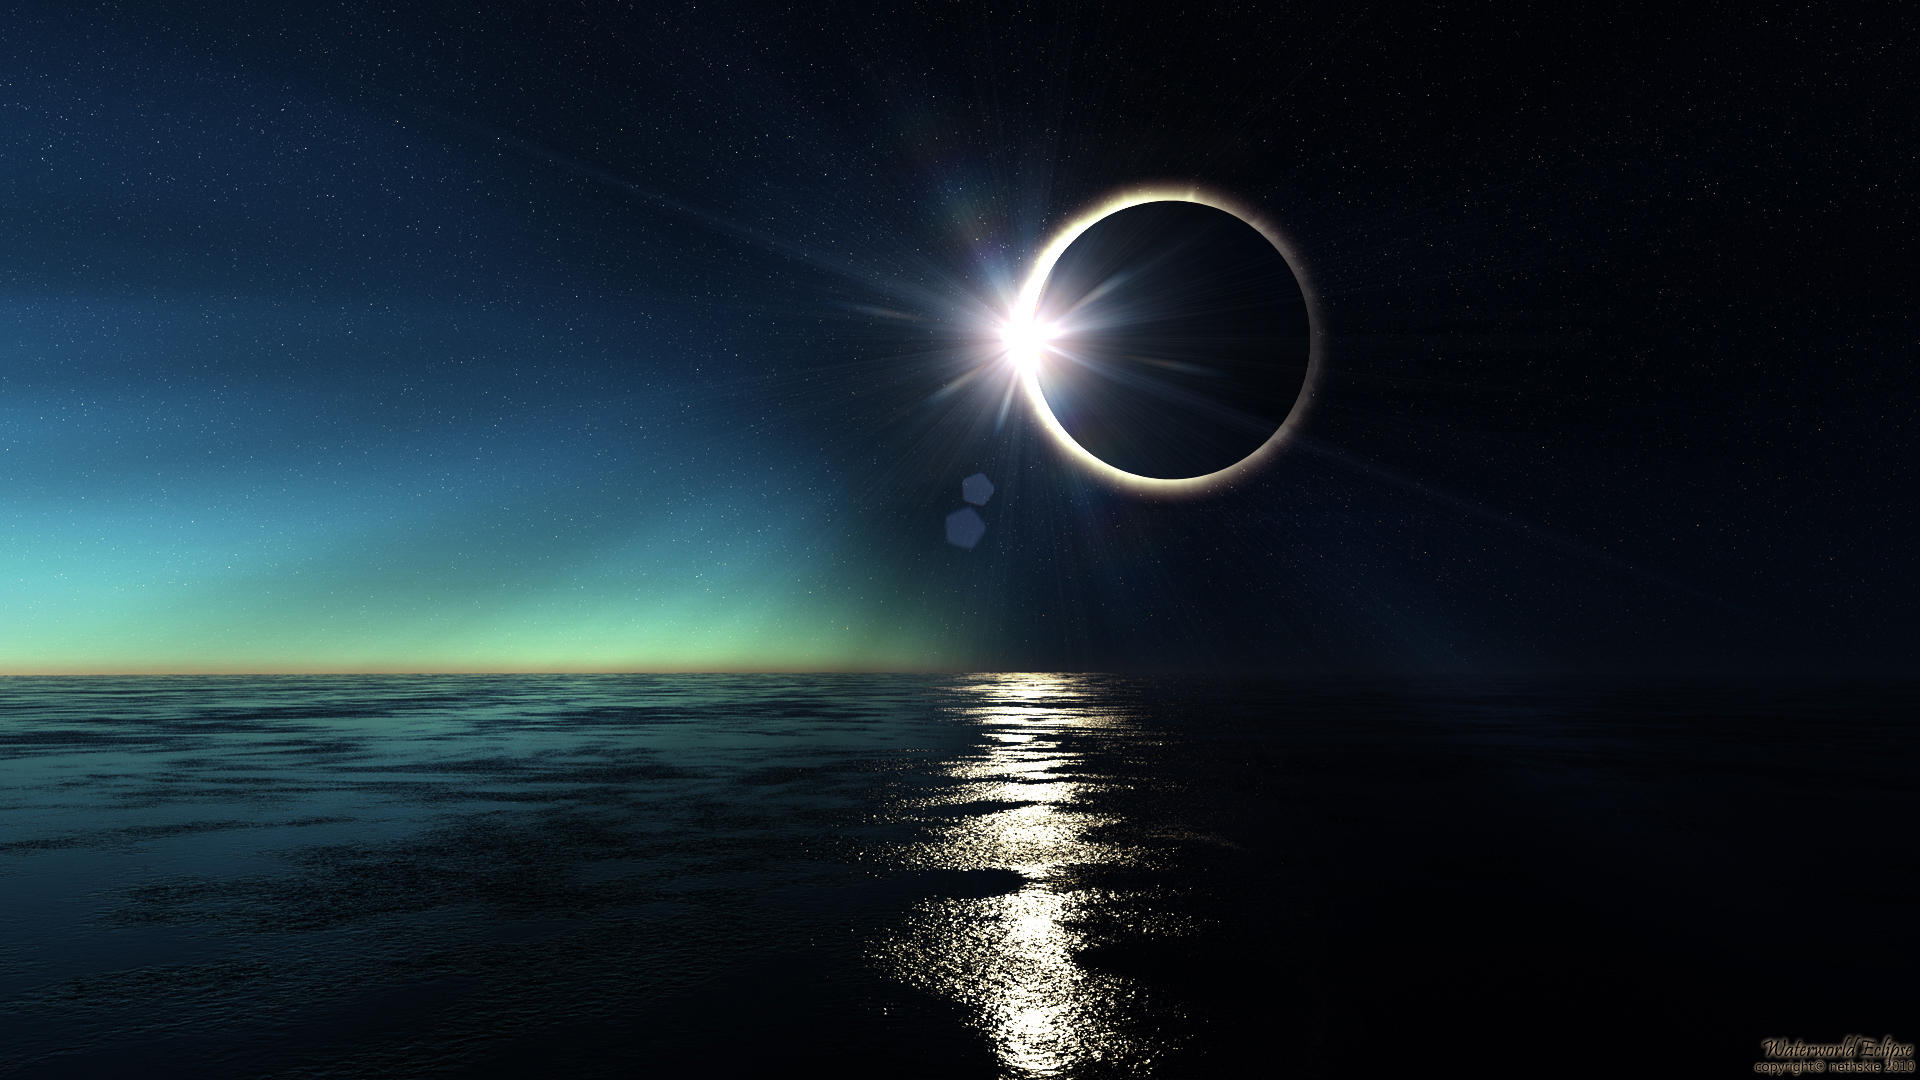 http://img05.deviantart.net/92d7/i/2012/270/6/8/waterworld_eclipse_by_nethskie-d2wtutt.jpg